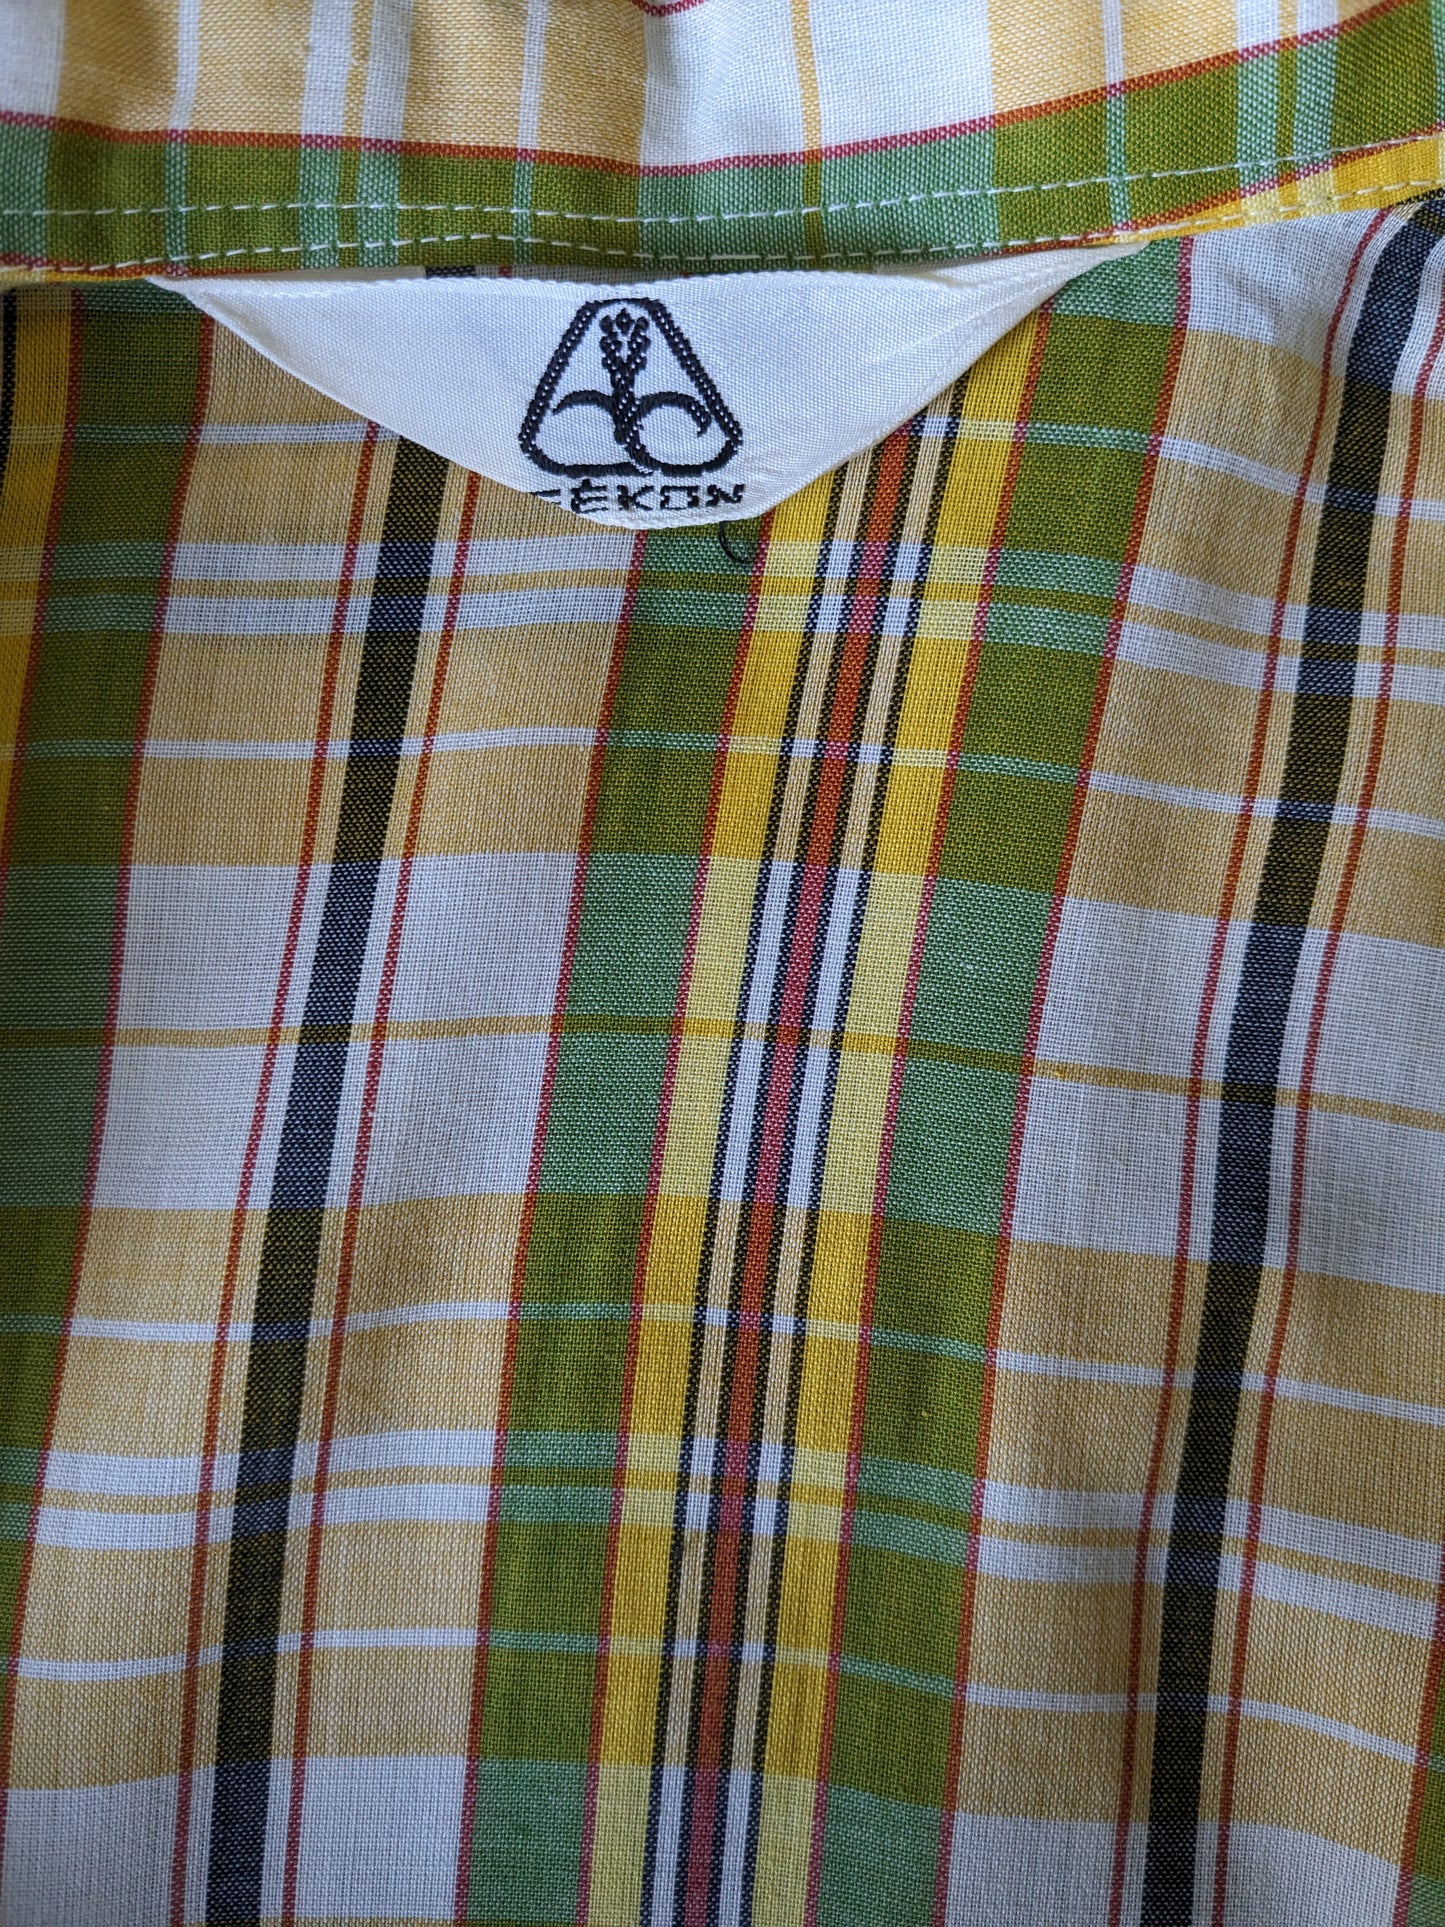 Chemise de fekon vintage avec collier. Velée verte jaune vérifiée. Taille M.